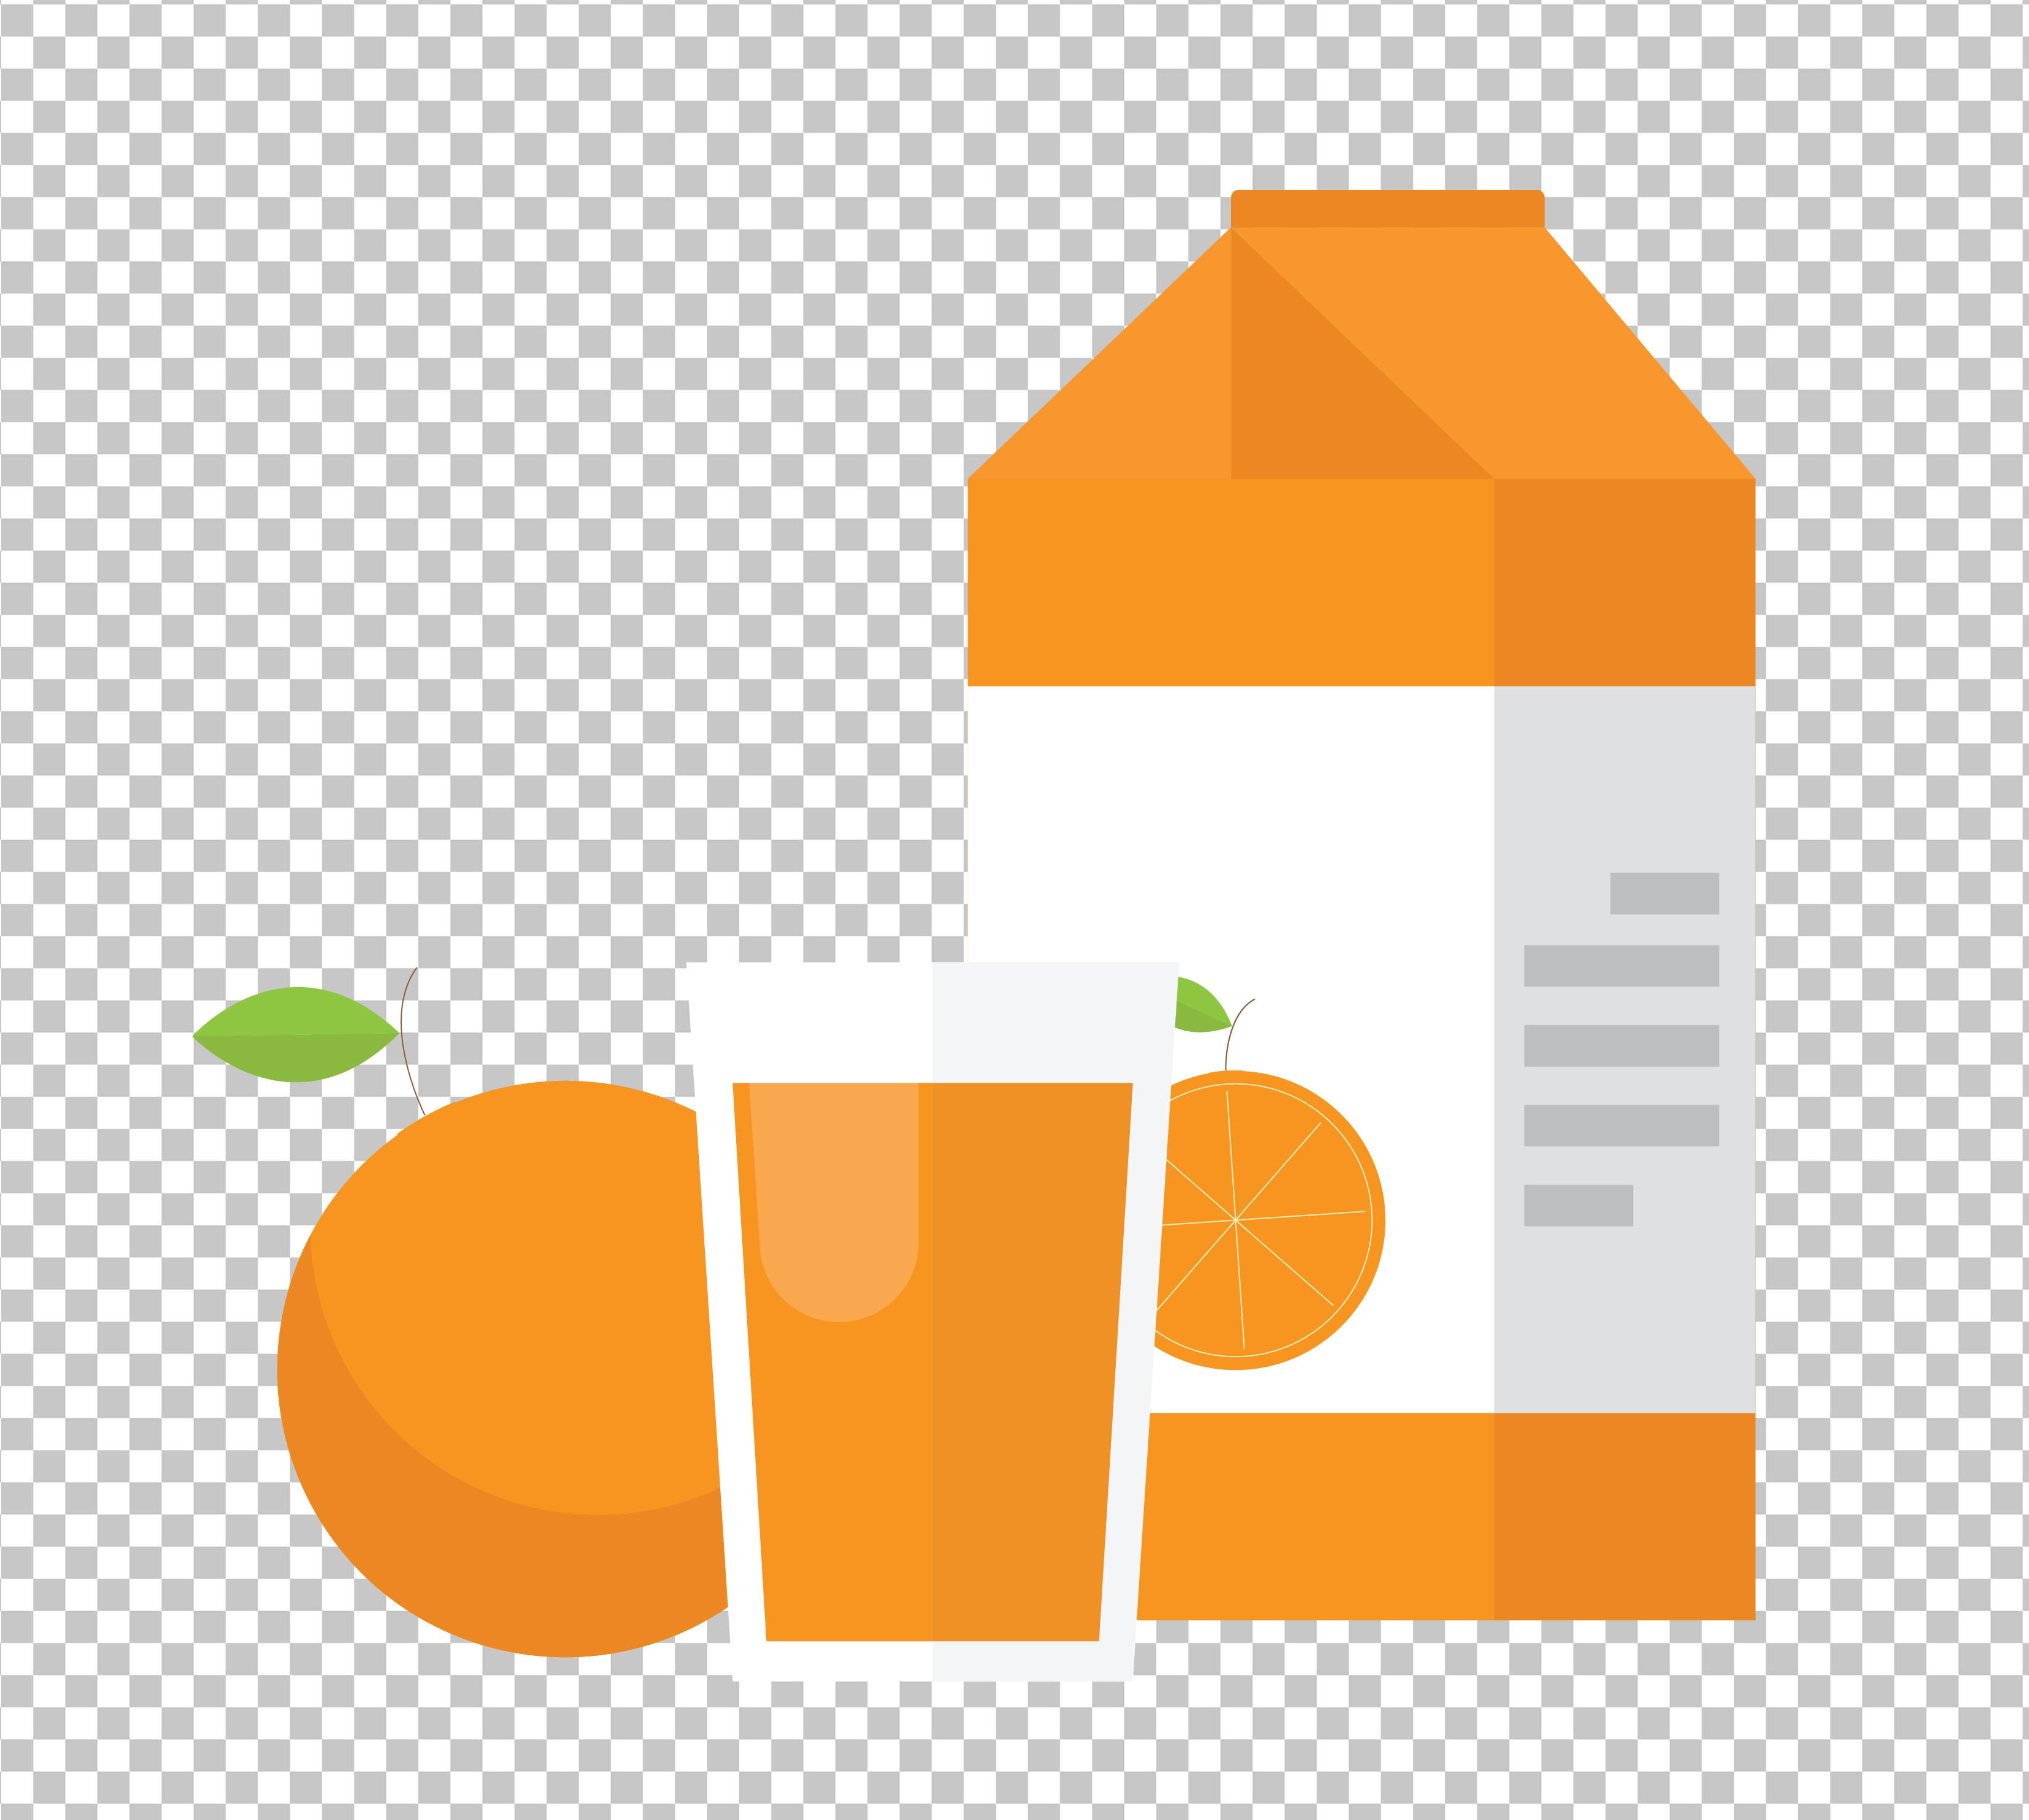 A carton of orange juice, a glass of orange juice, and an orange on a transparent background.